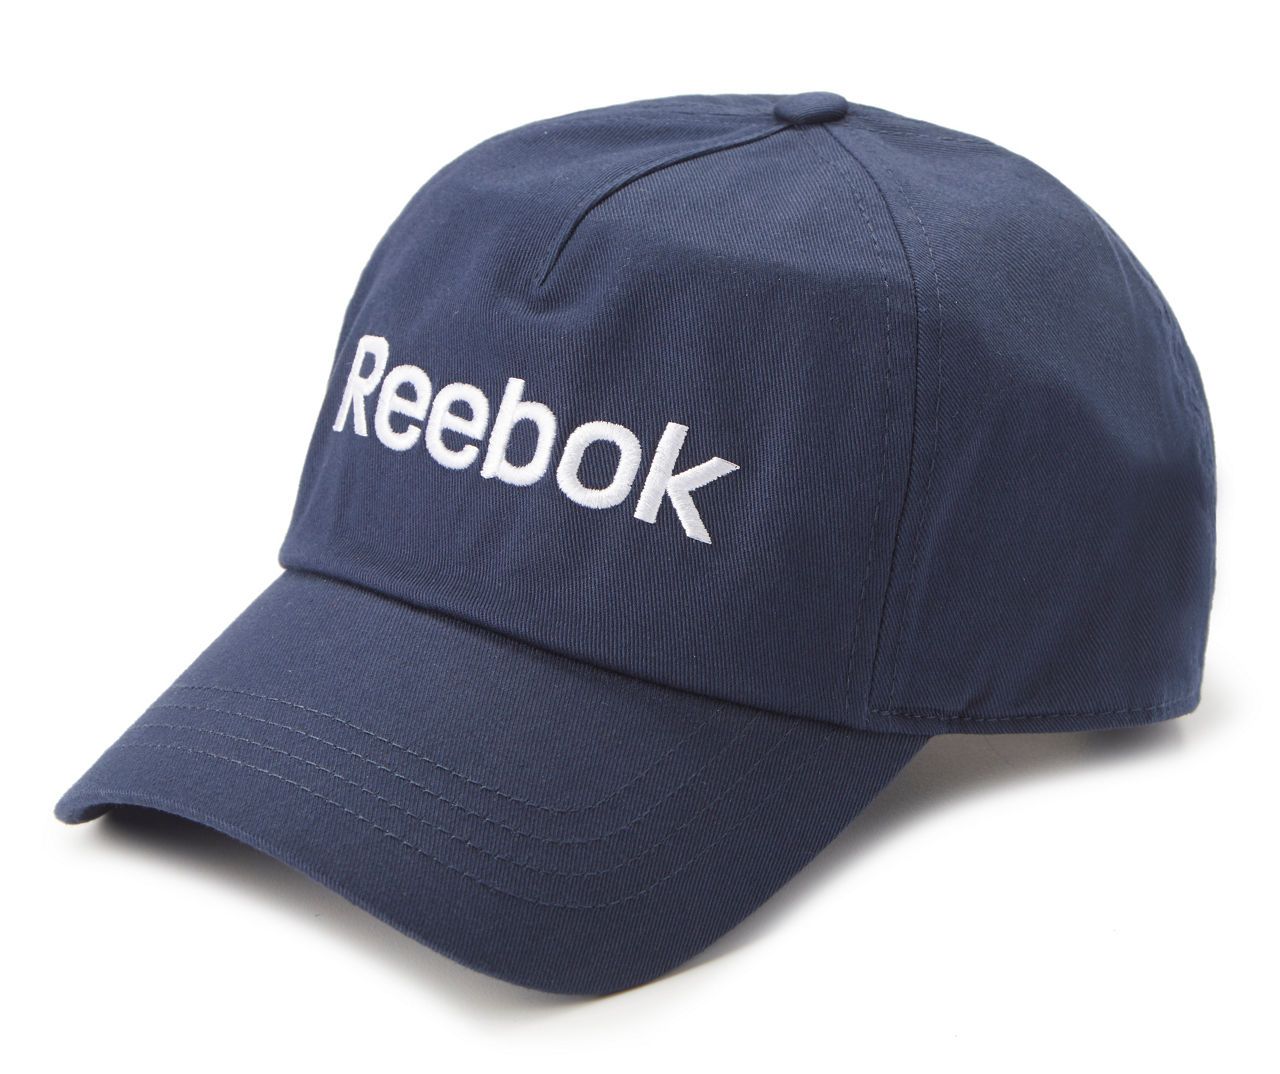 Reebok Men's Hat - White